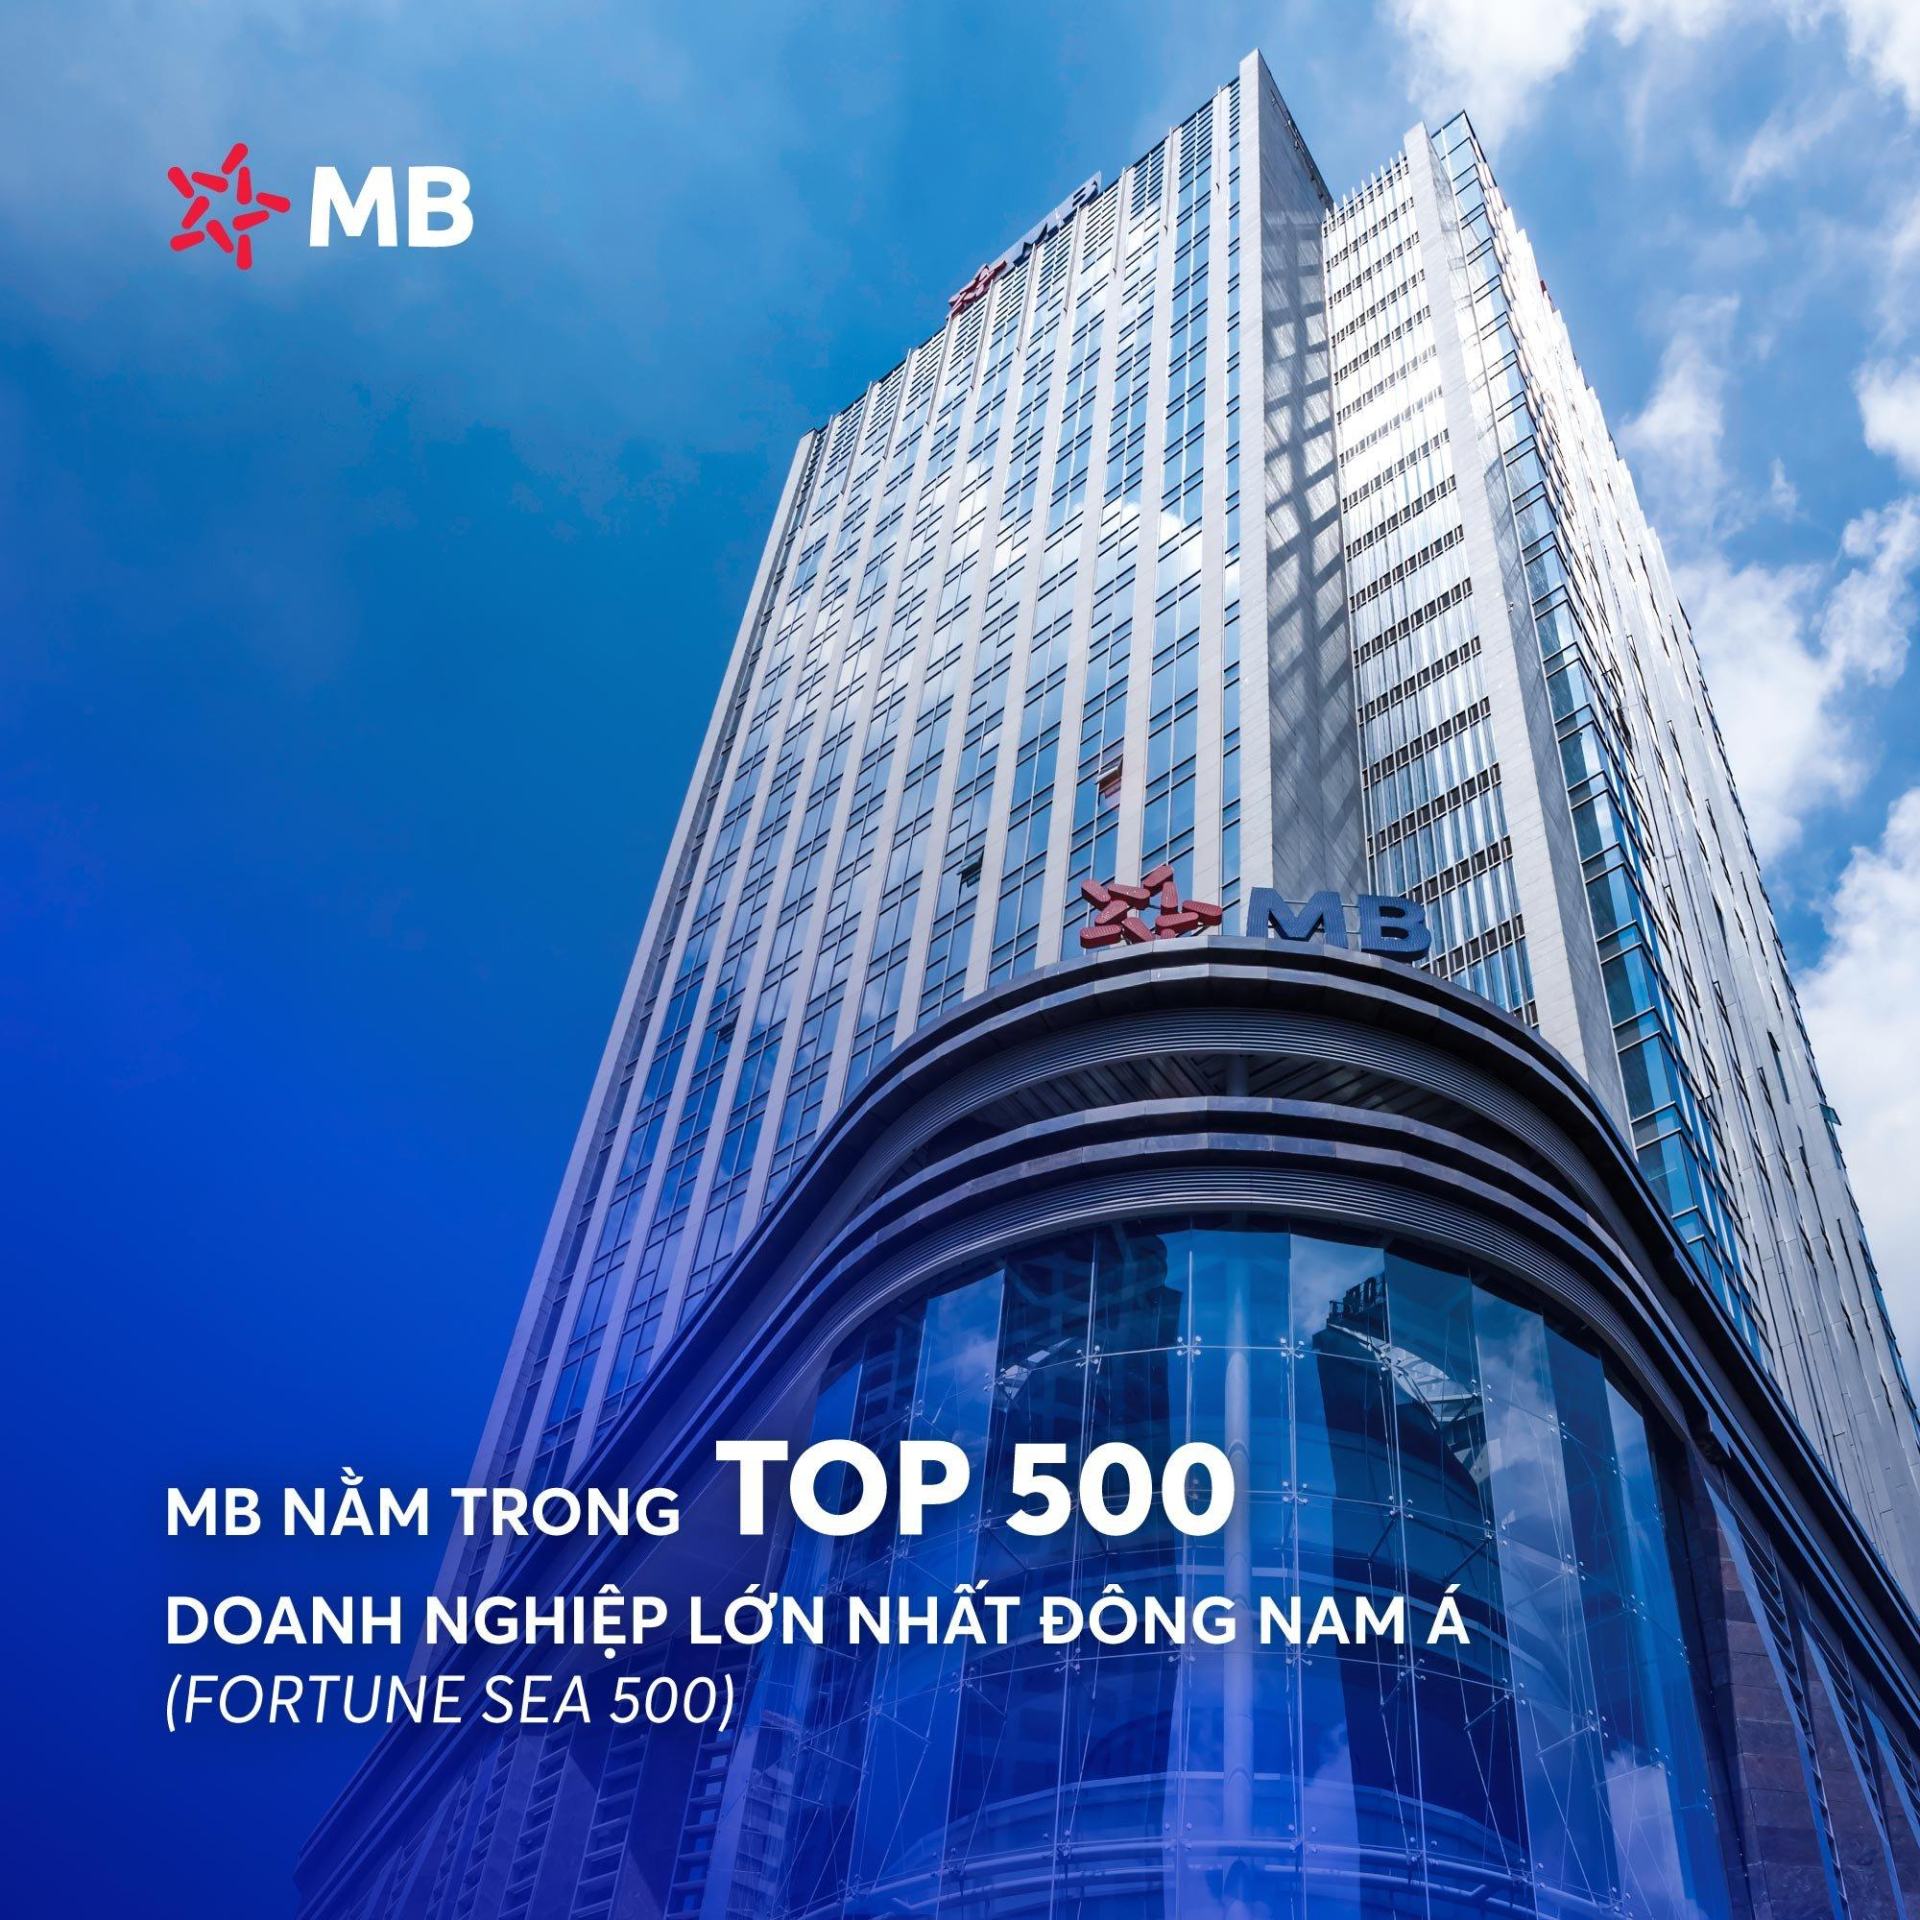 MB nằm trong TOP 500 doanh nghiệp lớn nhất Đông Nam Á - ảnh 1